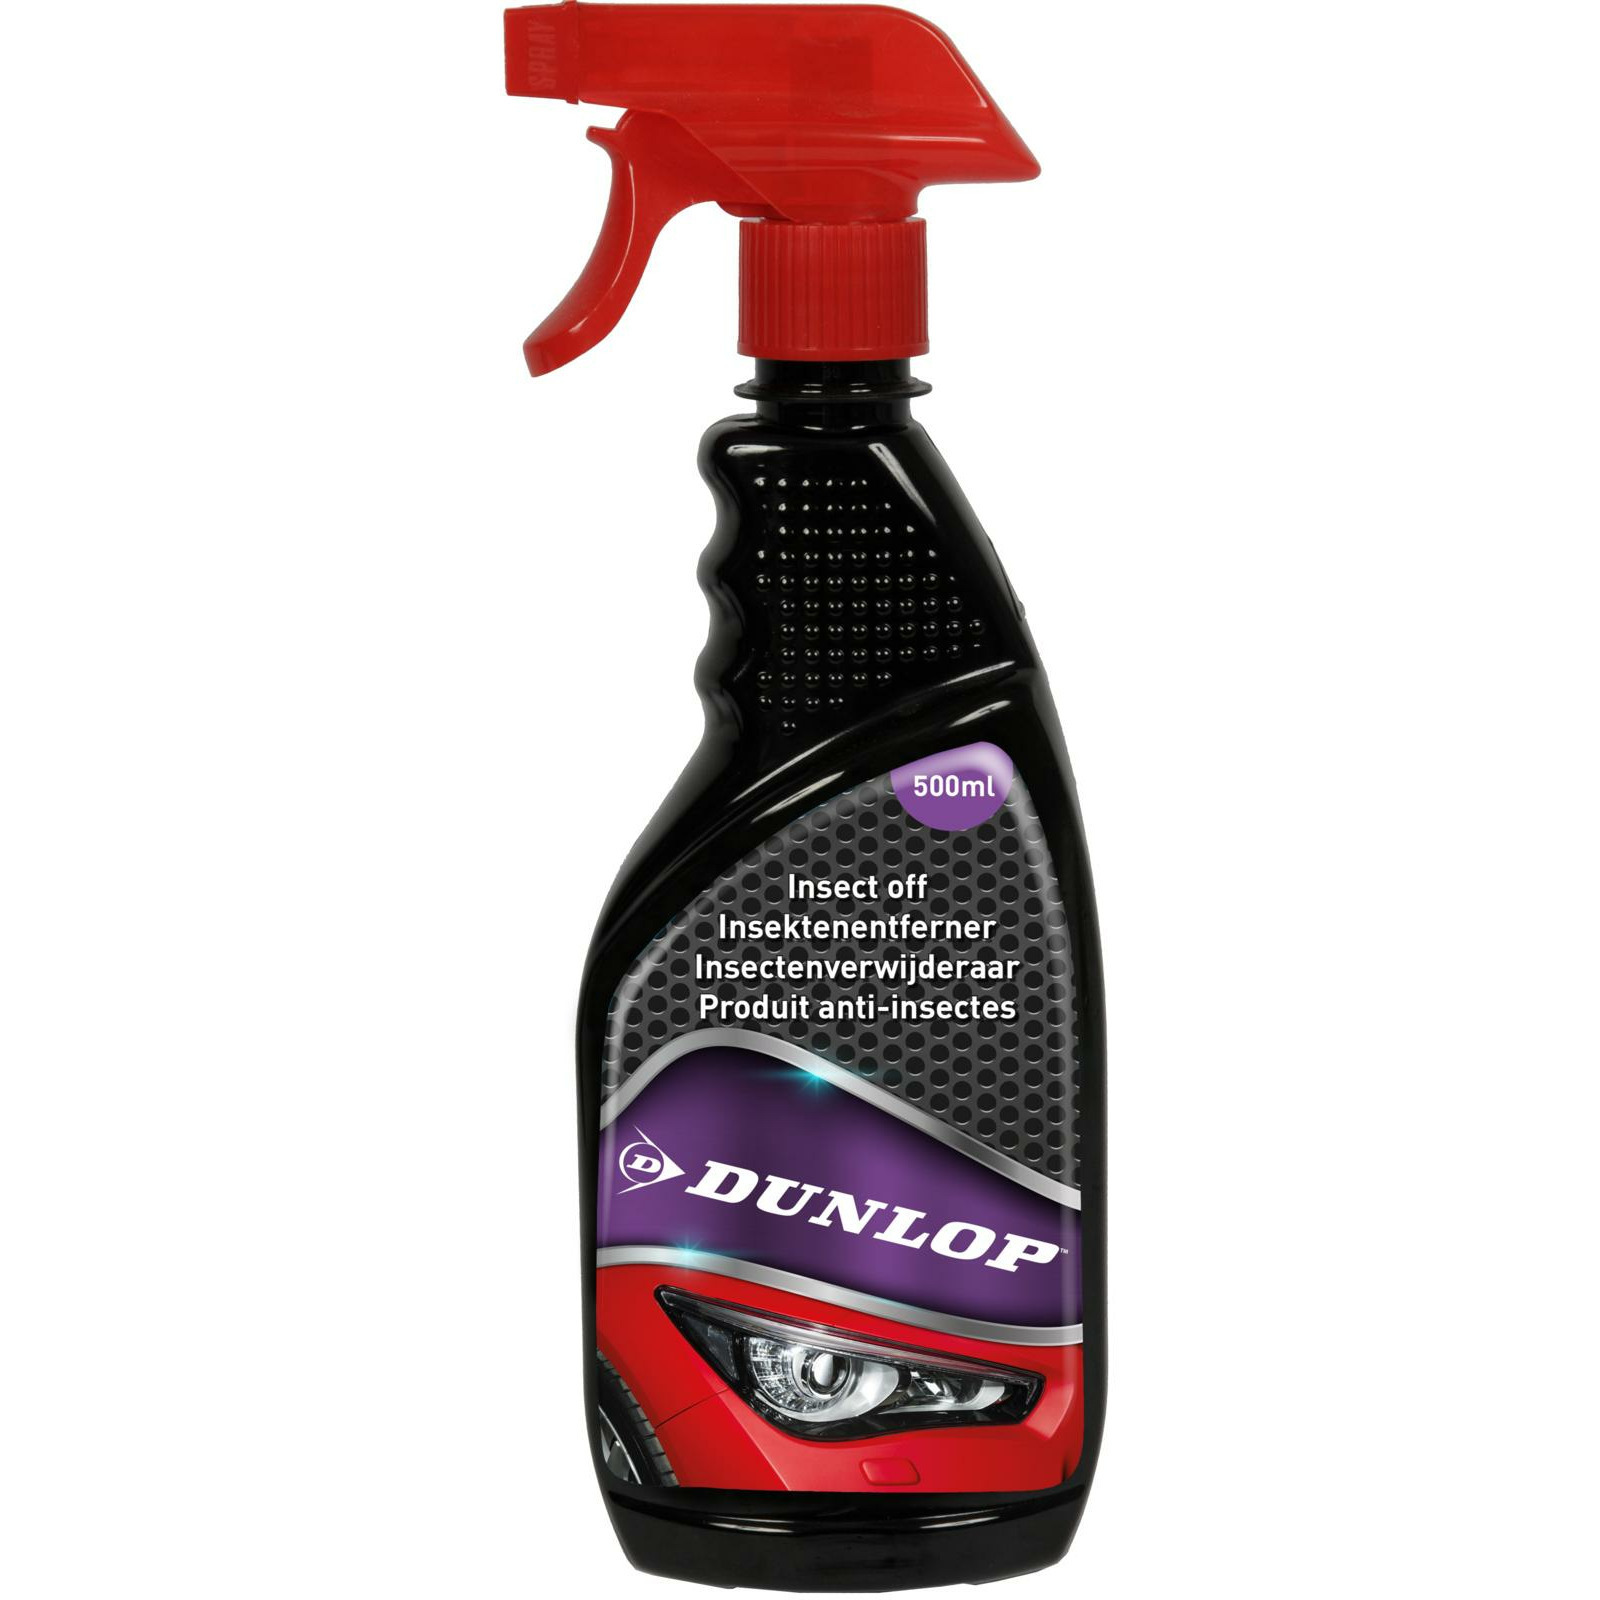 Dunlop Auto insectenreiniger schoonmaak spray bus van 500 ml